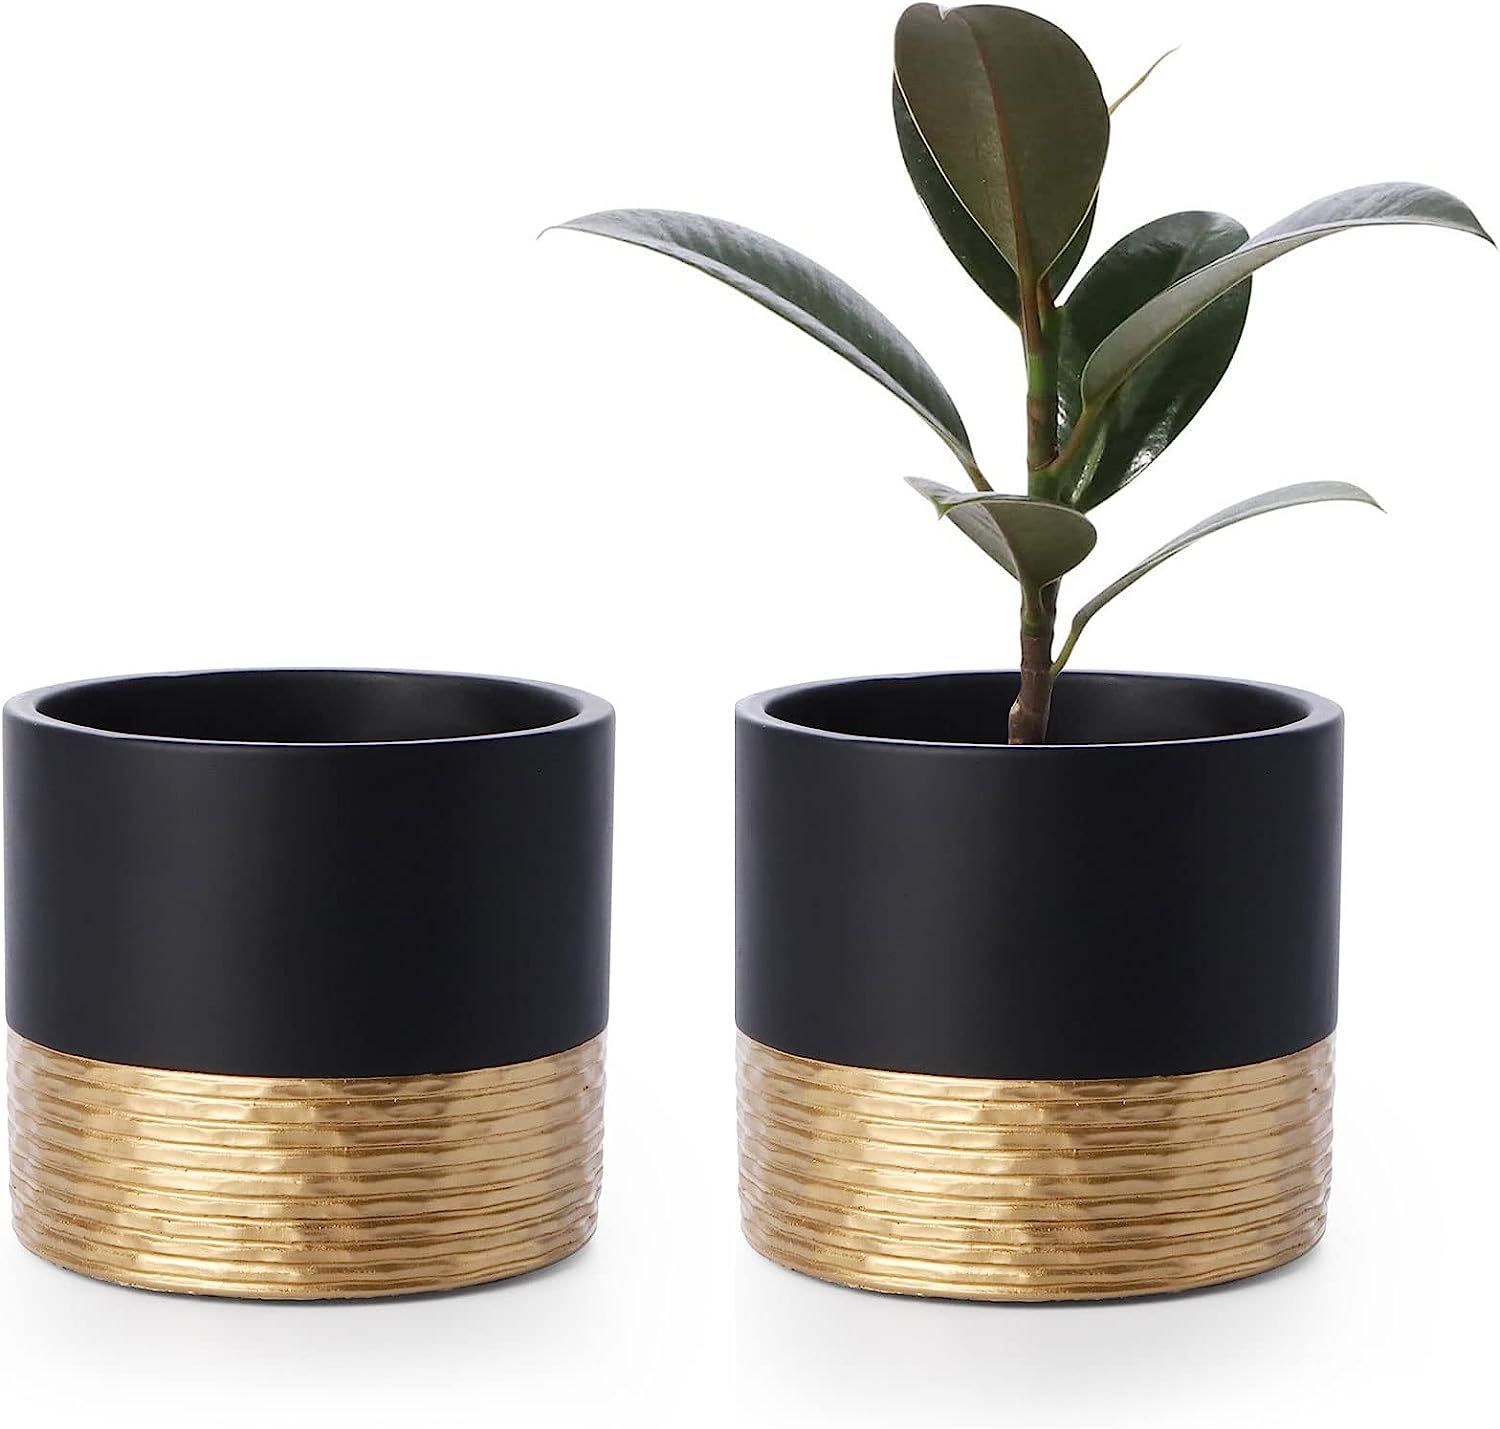 POTEY Cement Planters Pots for Plants Indoor - 5 Inch Concrete Succulent Flowerpot Bonsai Contain... | Amazon (US)